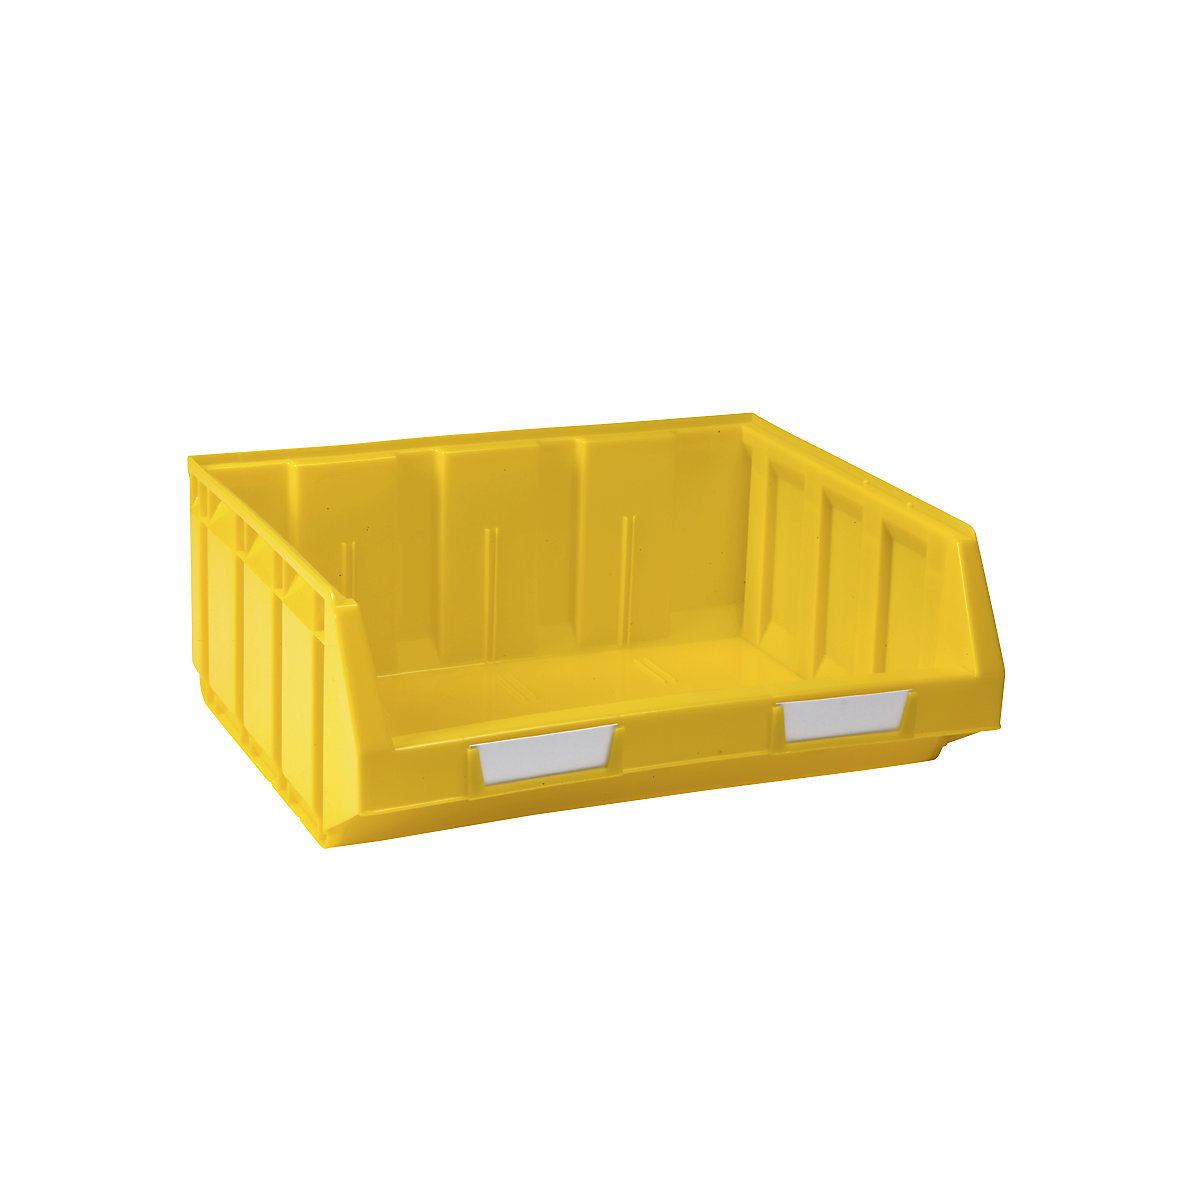 Otwarty pojemnik magazynowy z polietylenu, dł. x szer. x wys. 345 x 410 x 164 mm, żółty, opak. 8 szt.-9